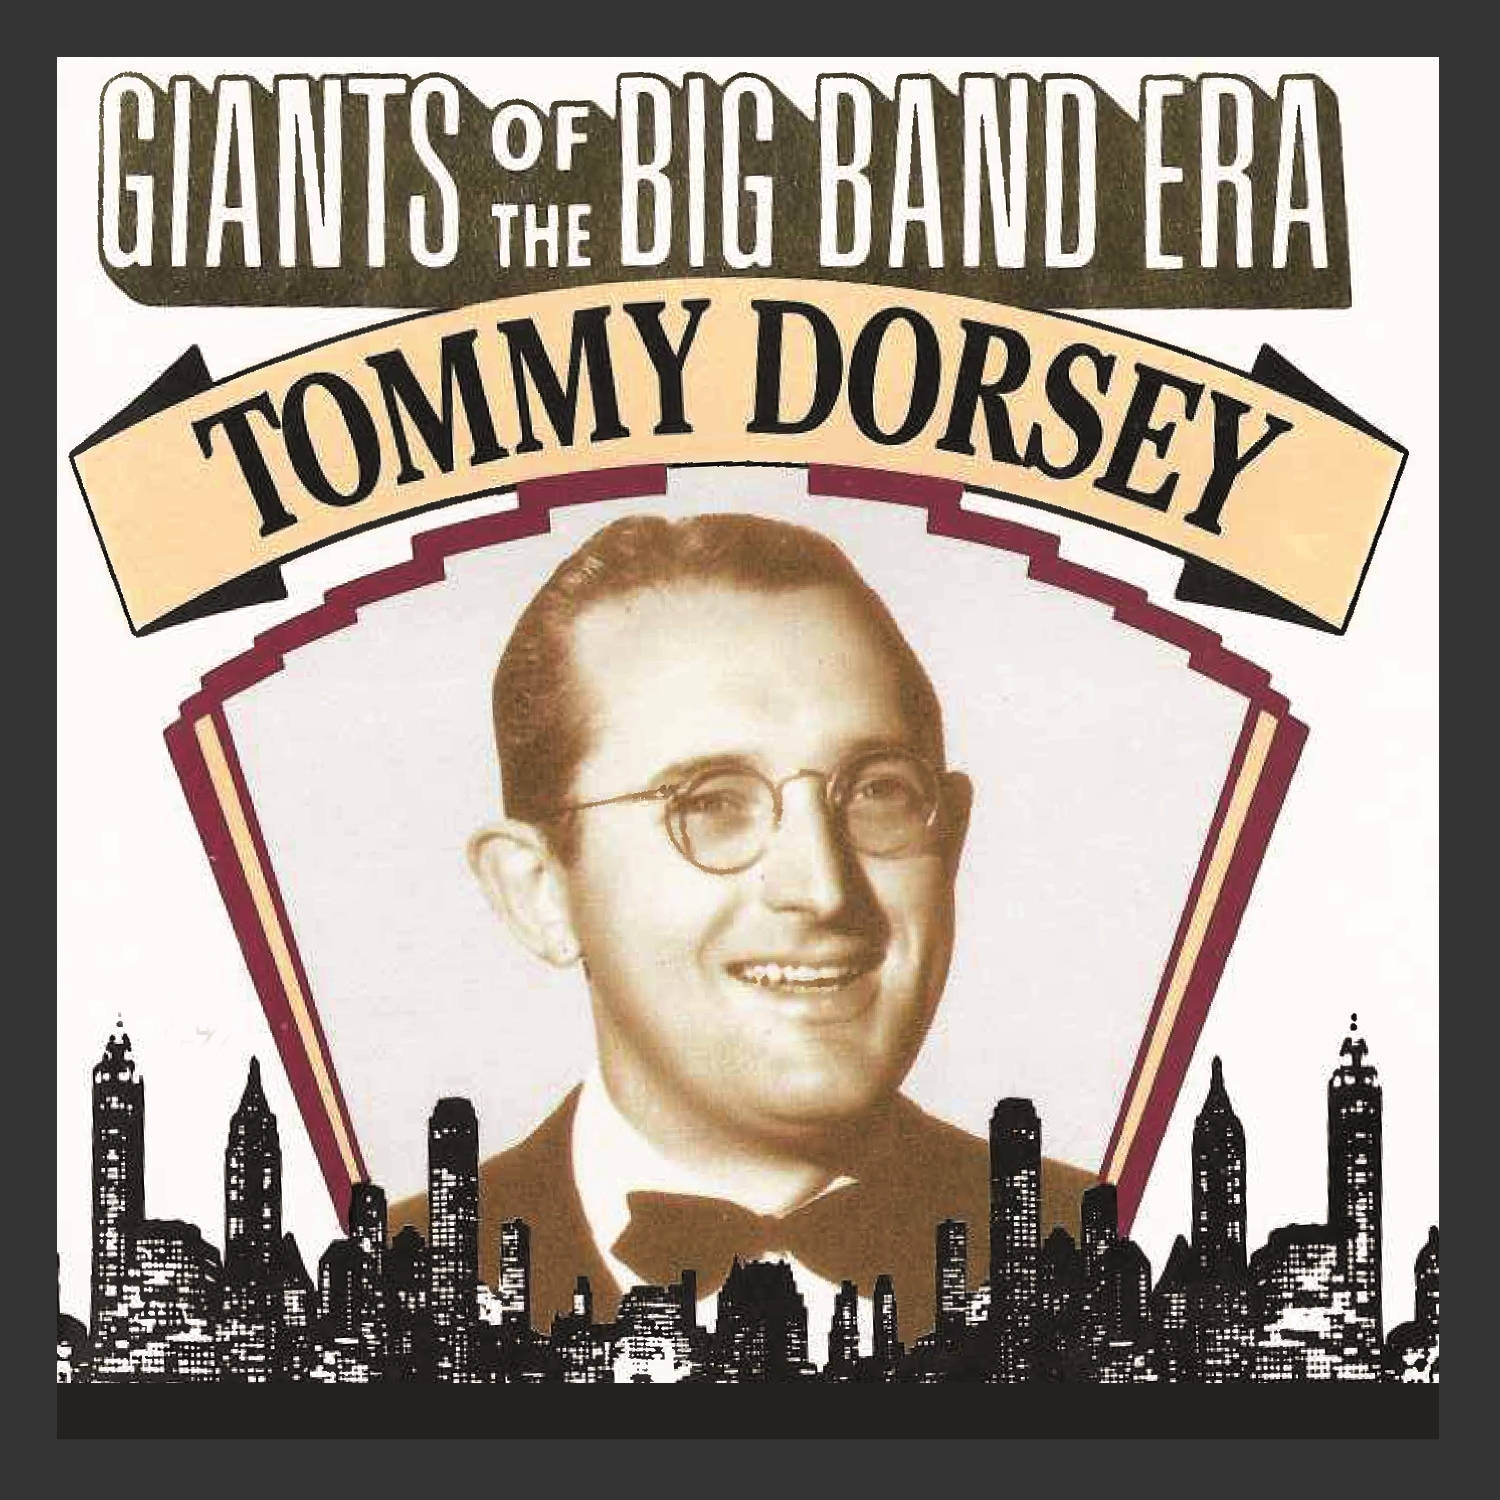 Tommydorsey: Gigantes Da Era Da Big Band. Papel de Parede